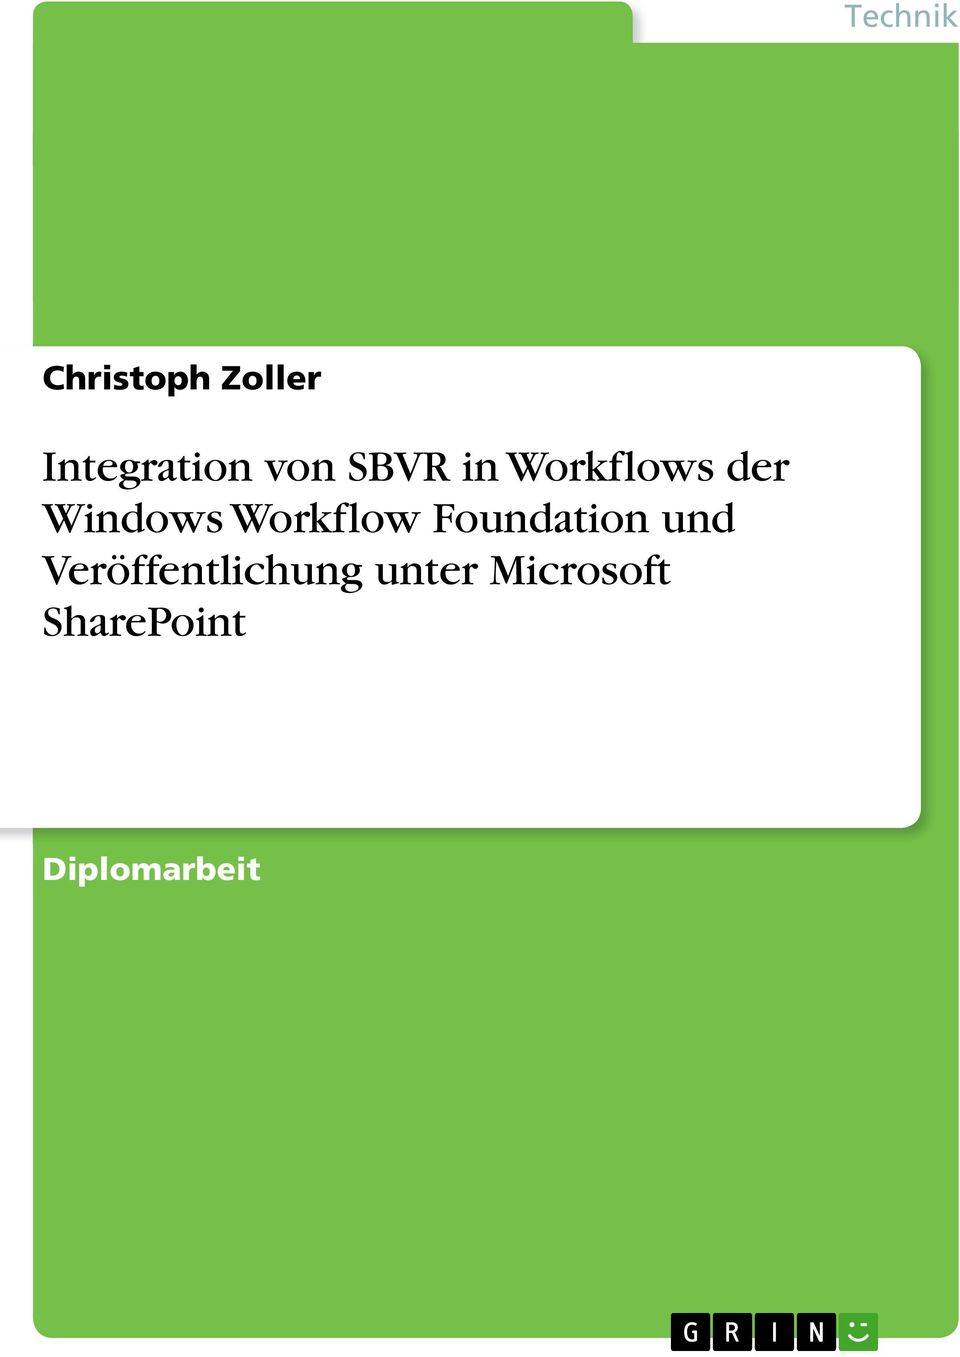 Workflow Foundation und